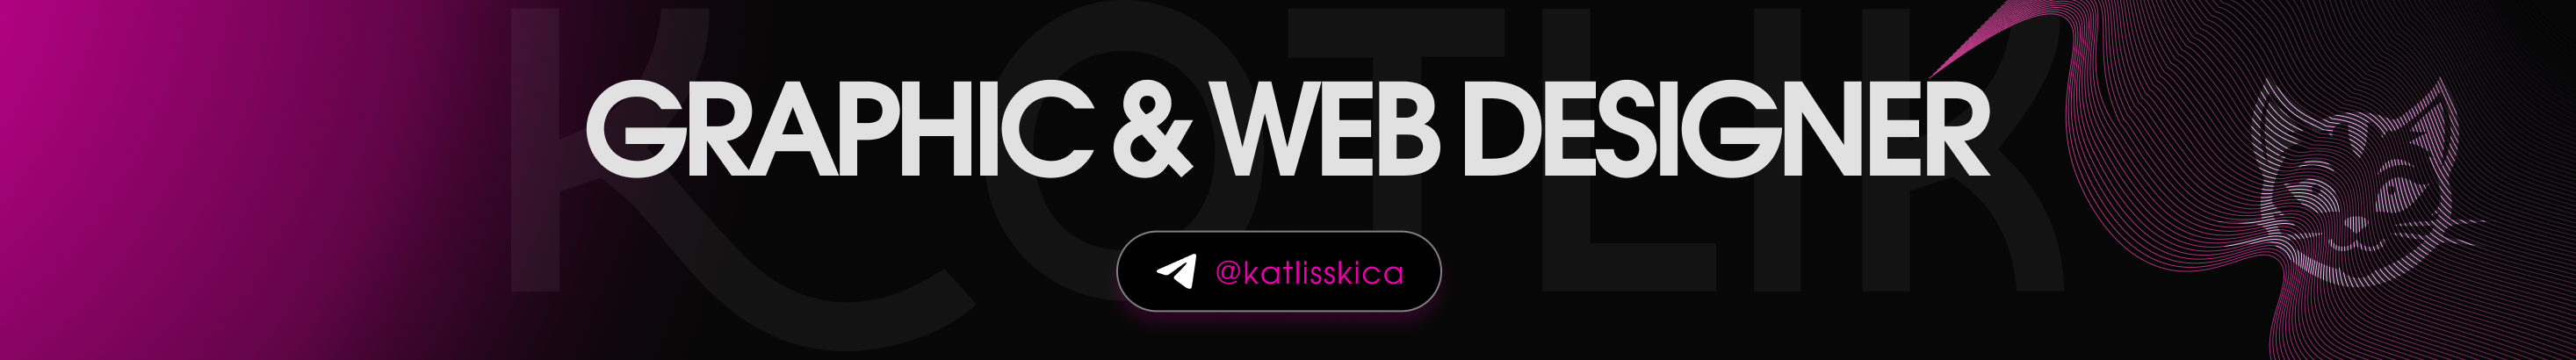 Kate Uspensky's profile banner